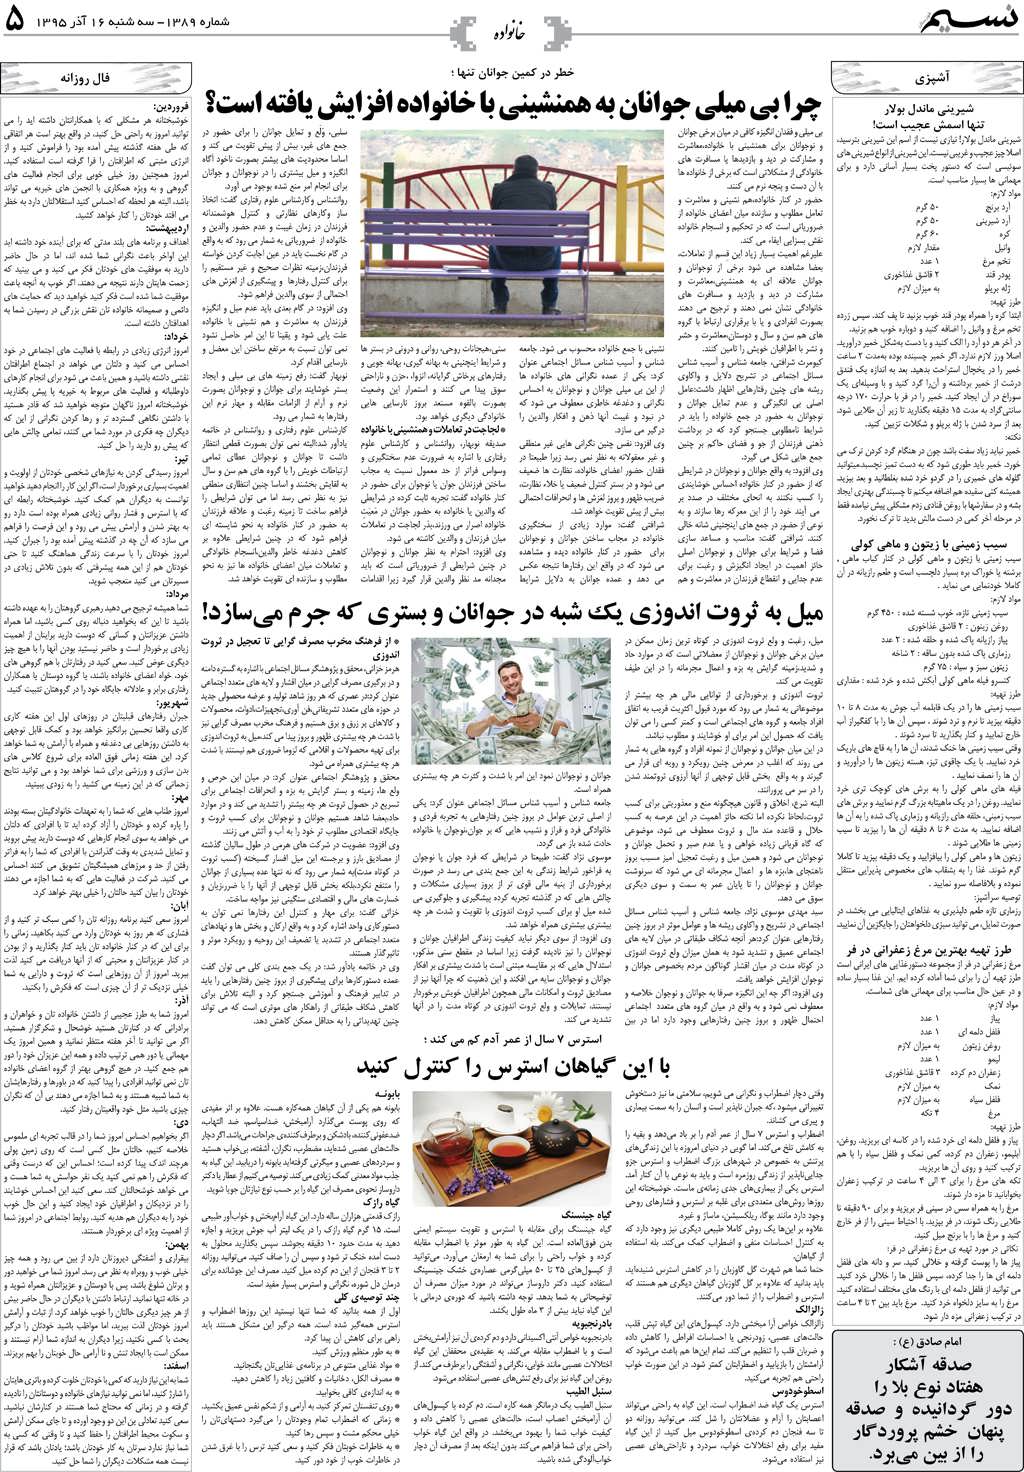 صفحه خانواده روزنامه نسیم شماره 1389